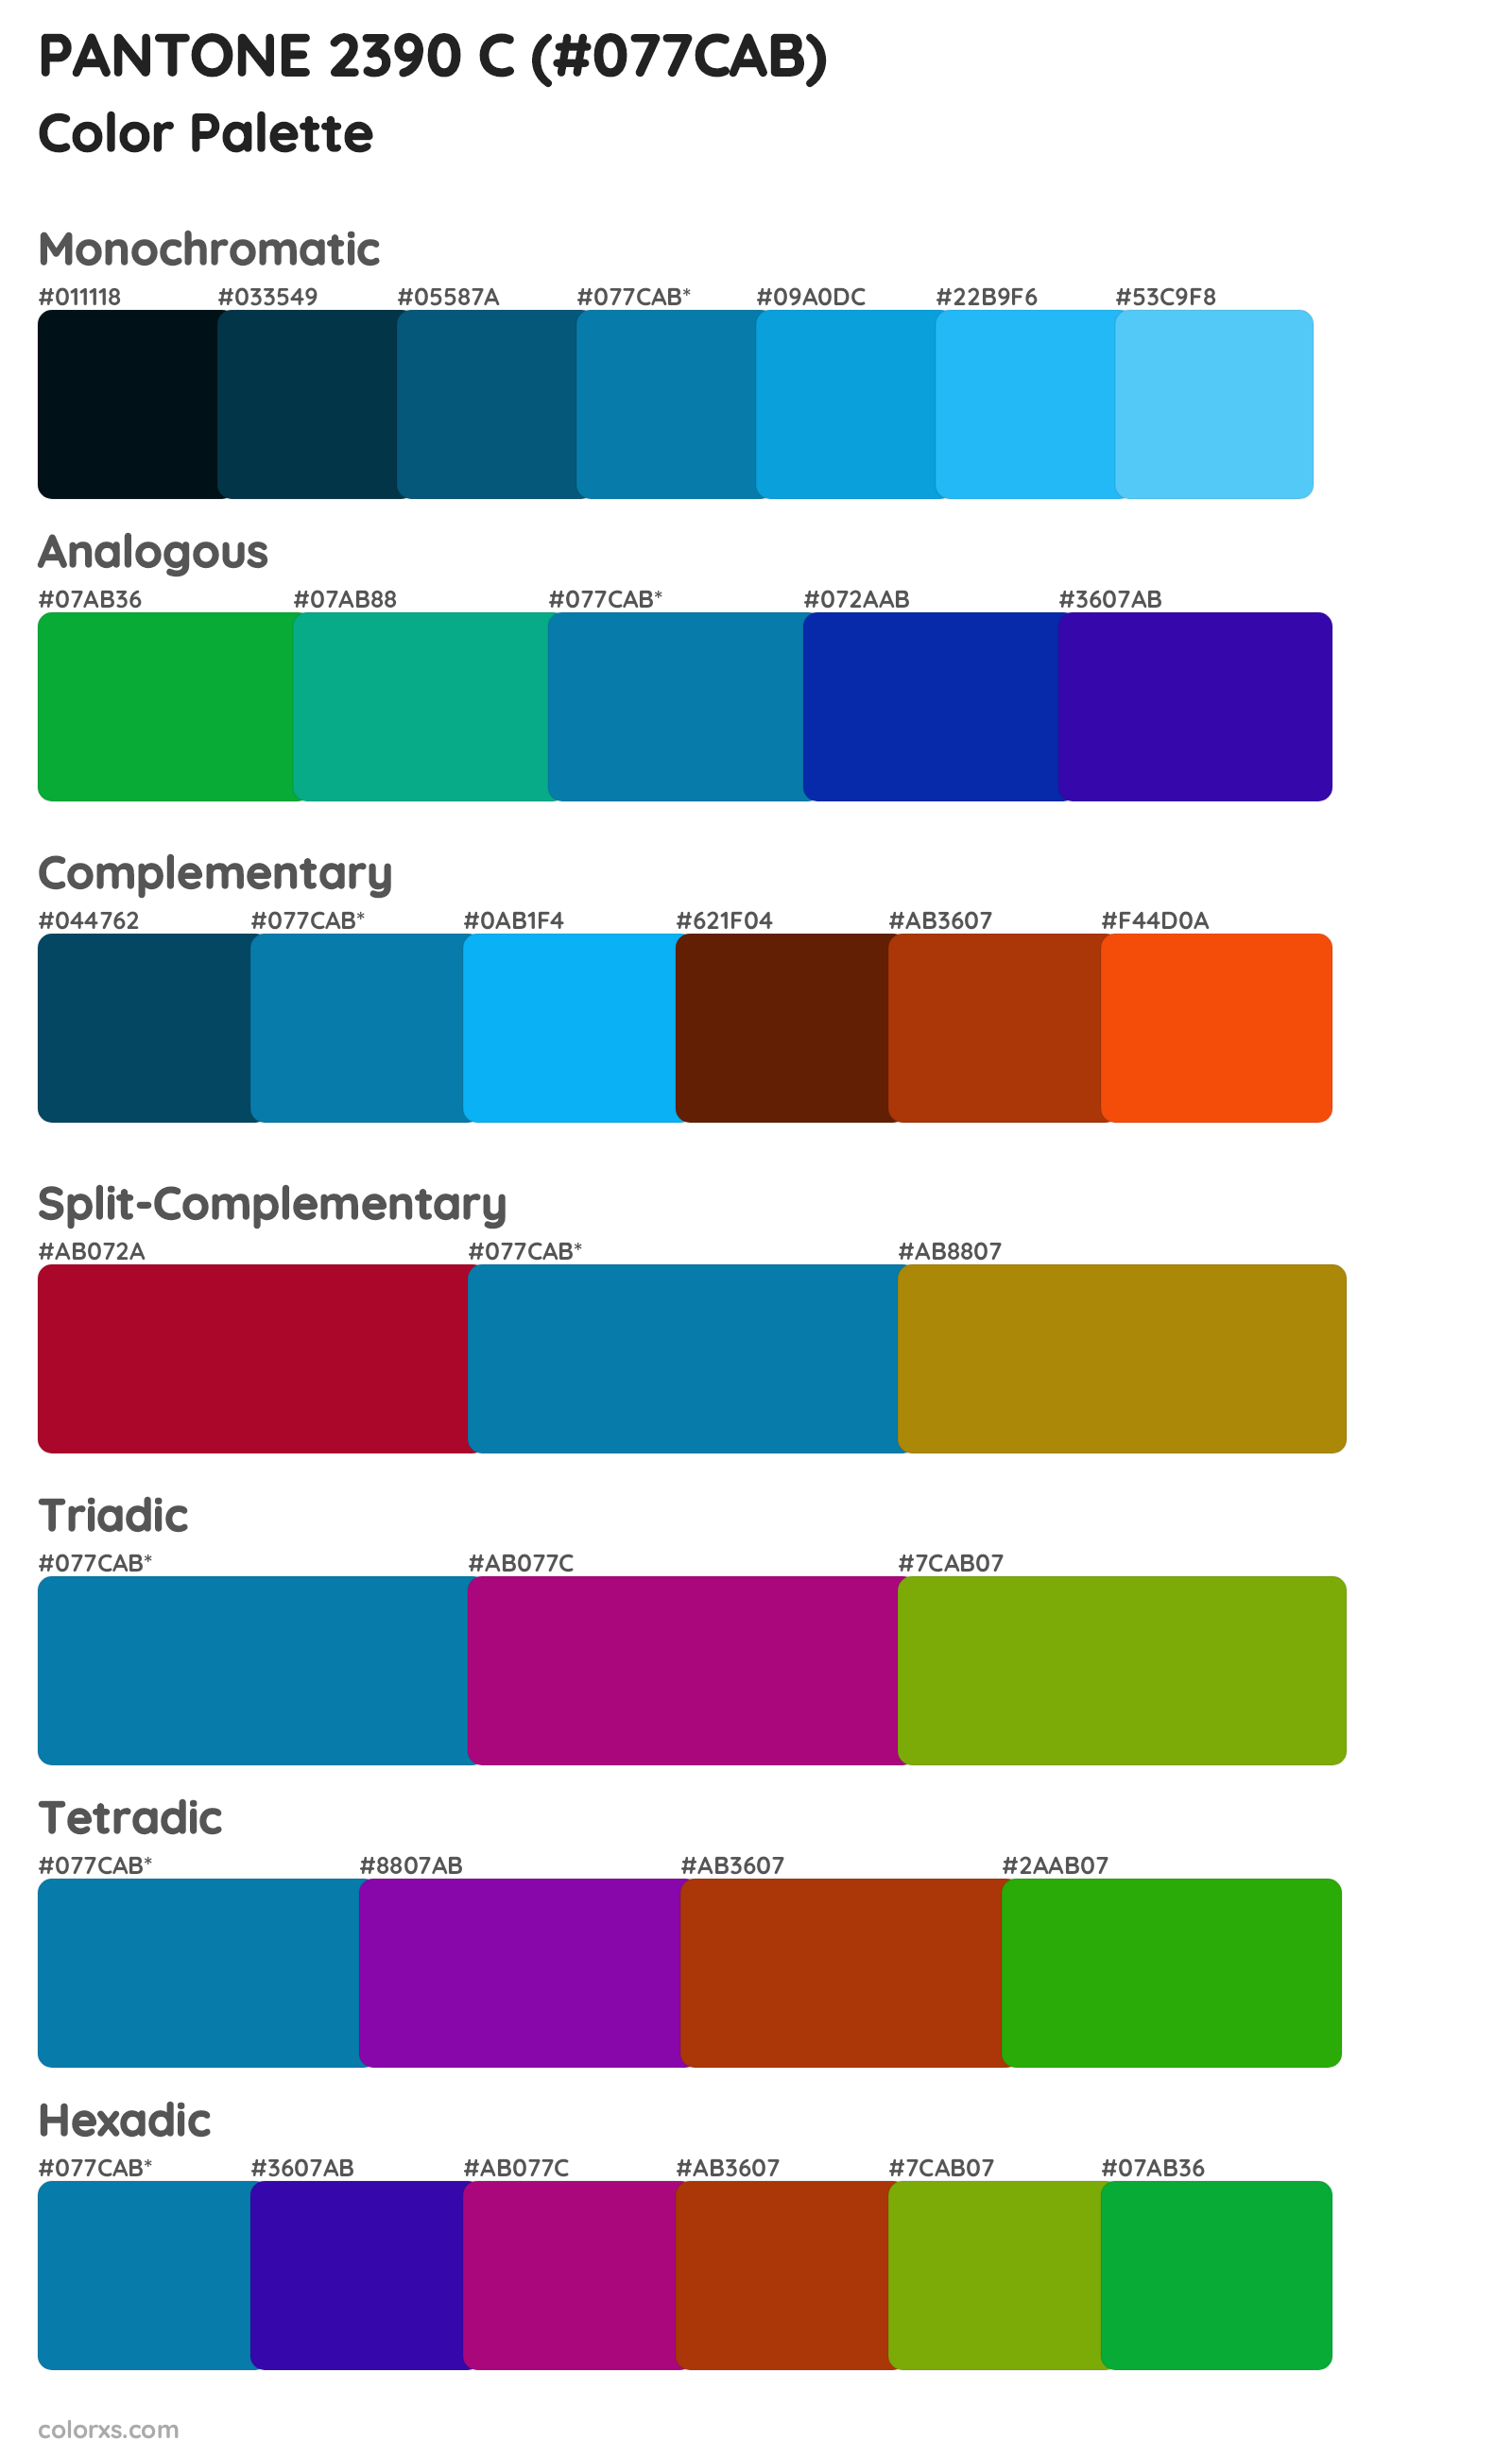 PANTONE 2390 C Color Scheme Palettes